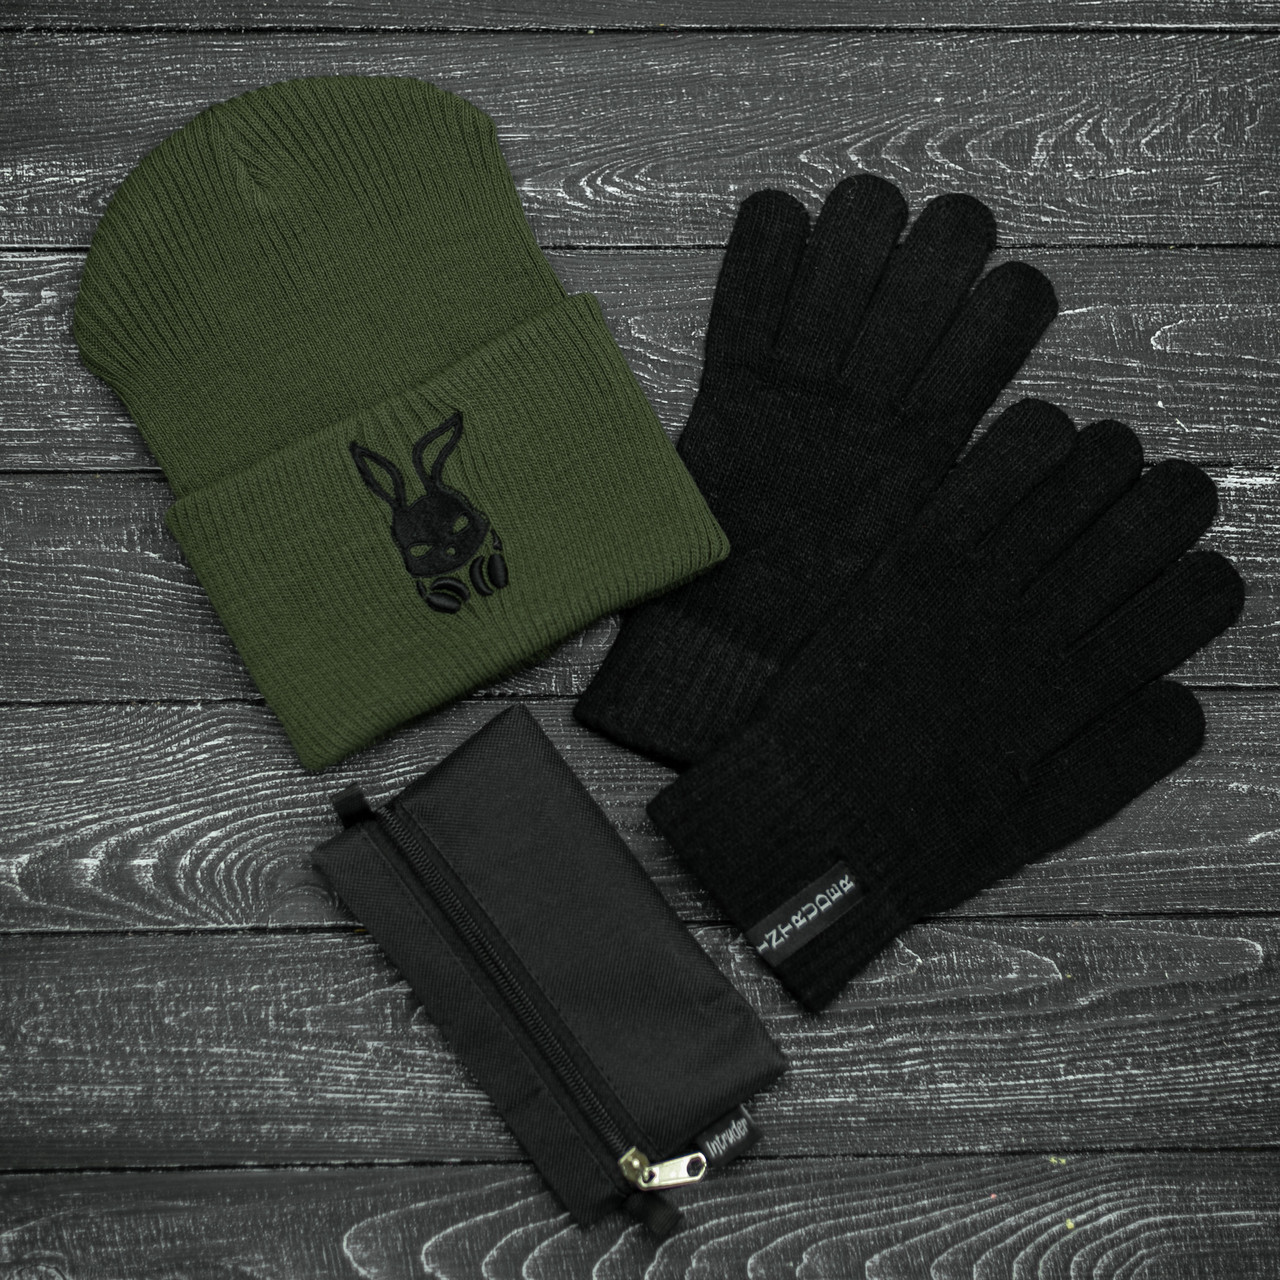 Шапка Мужская/Женская Intruder зимняя bunny logo хаки и перчатки черные, зимний комплект